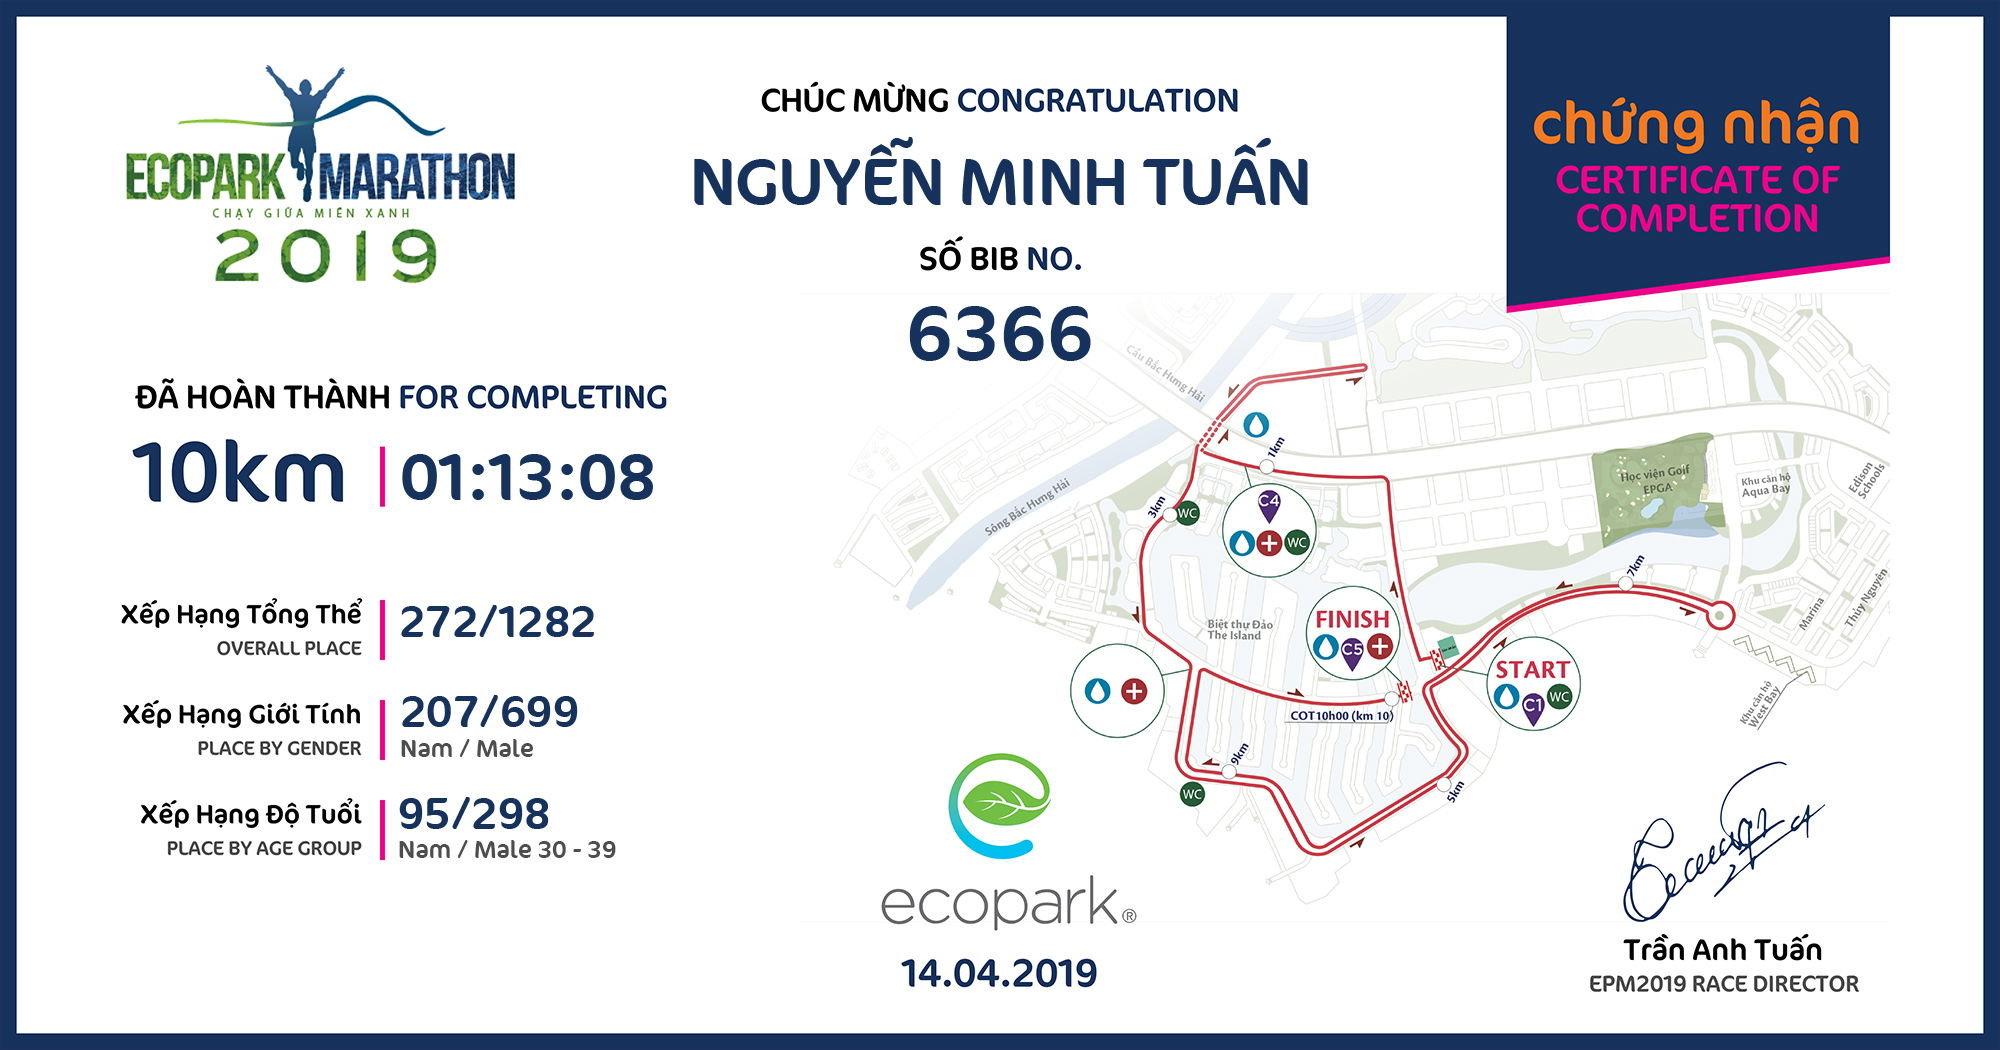 6366 - Nguyễn Minh Tuấn